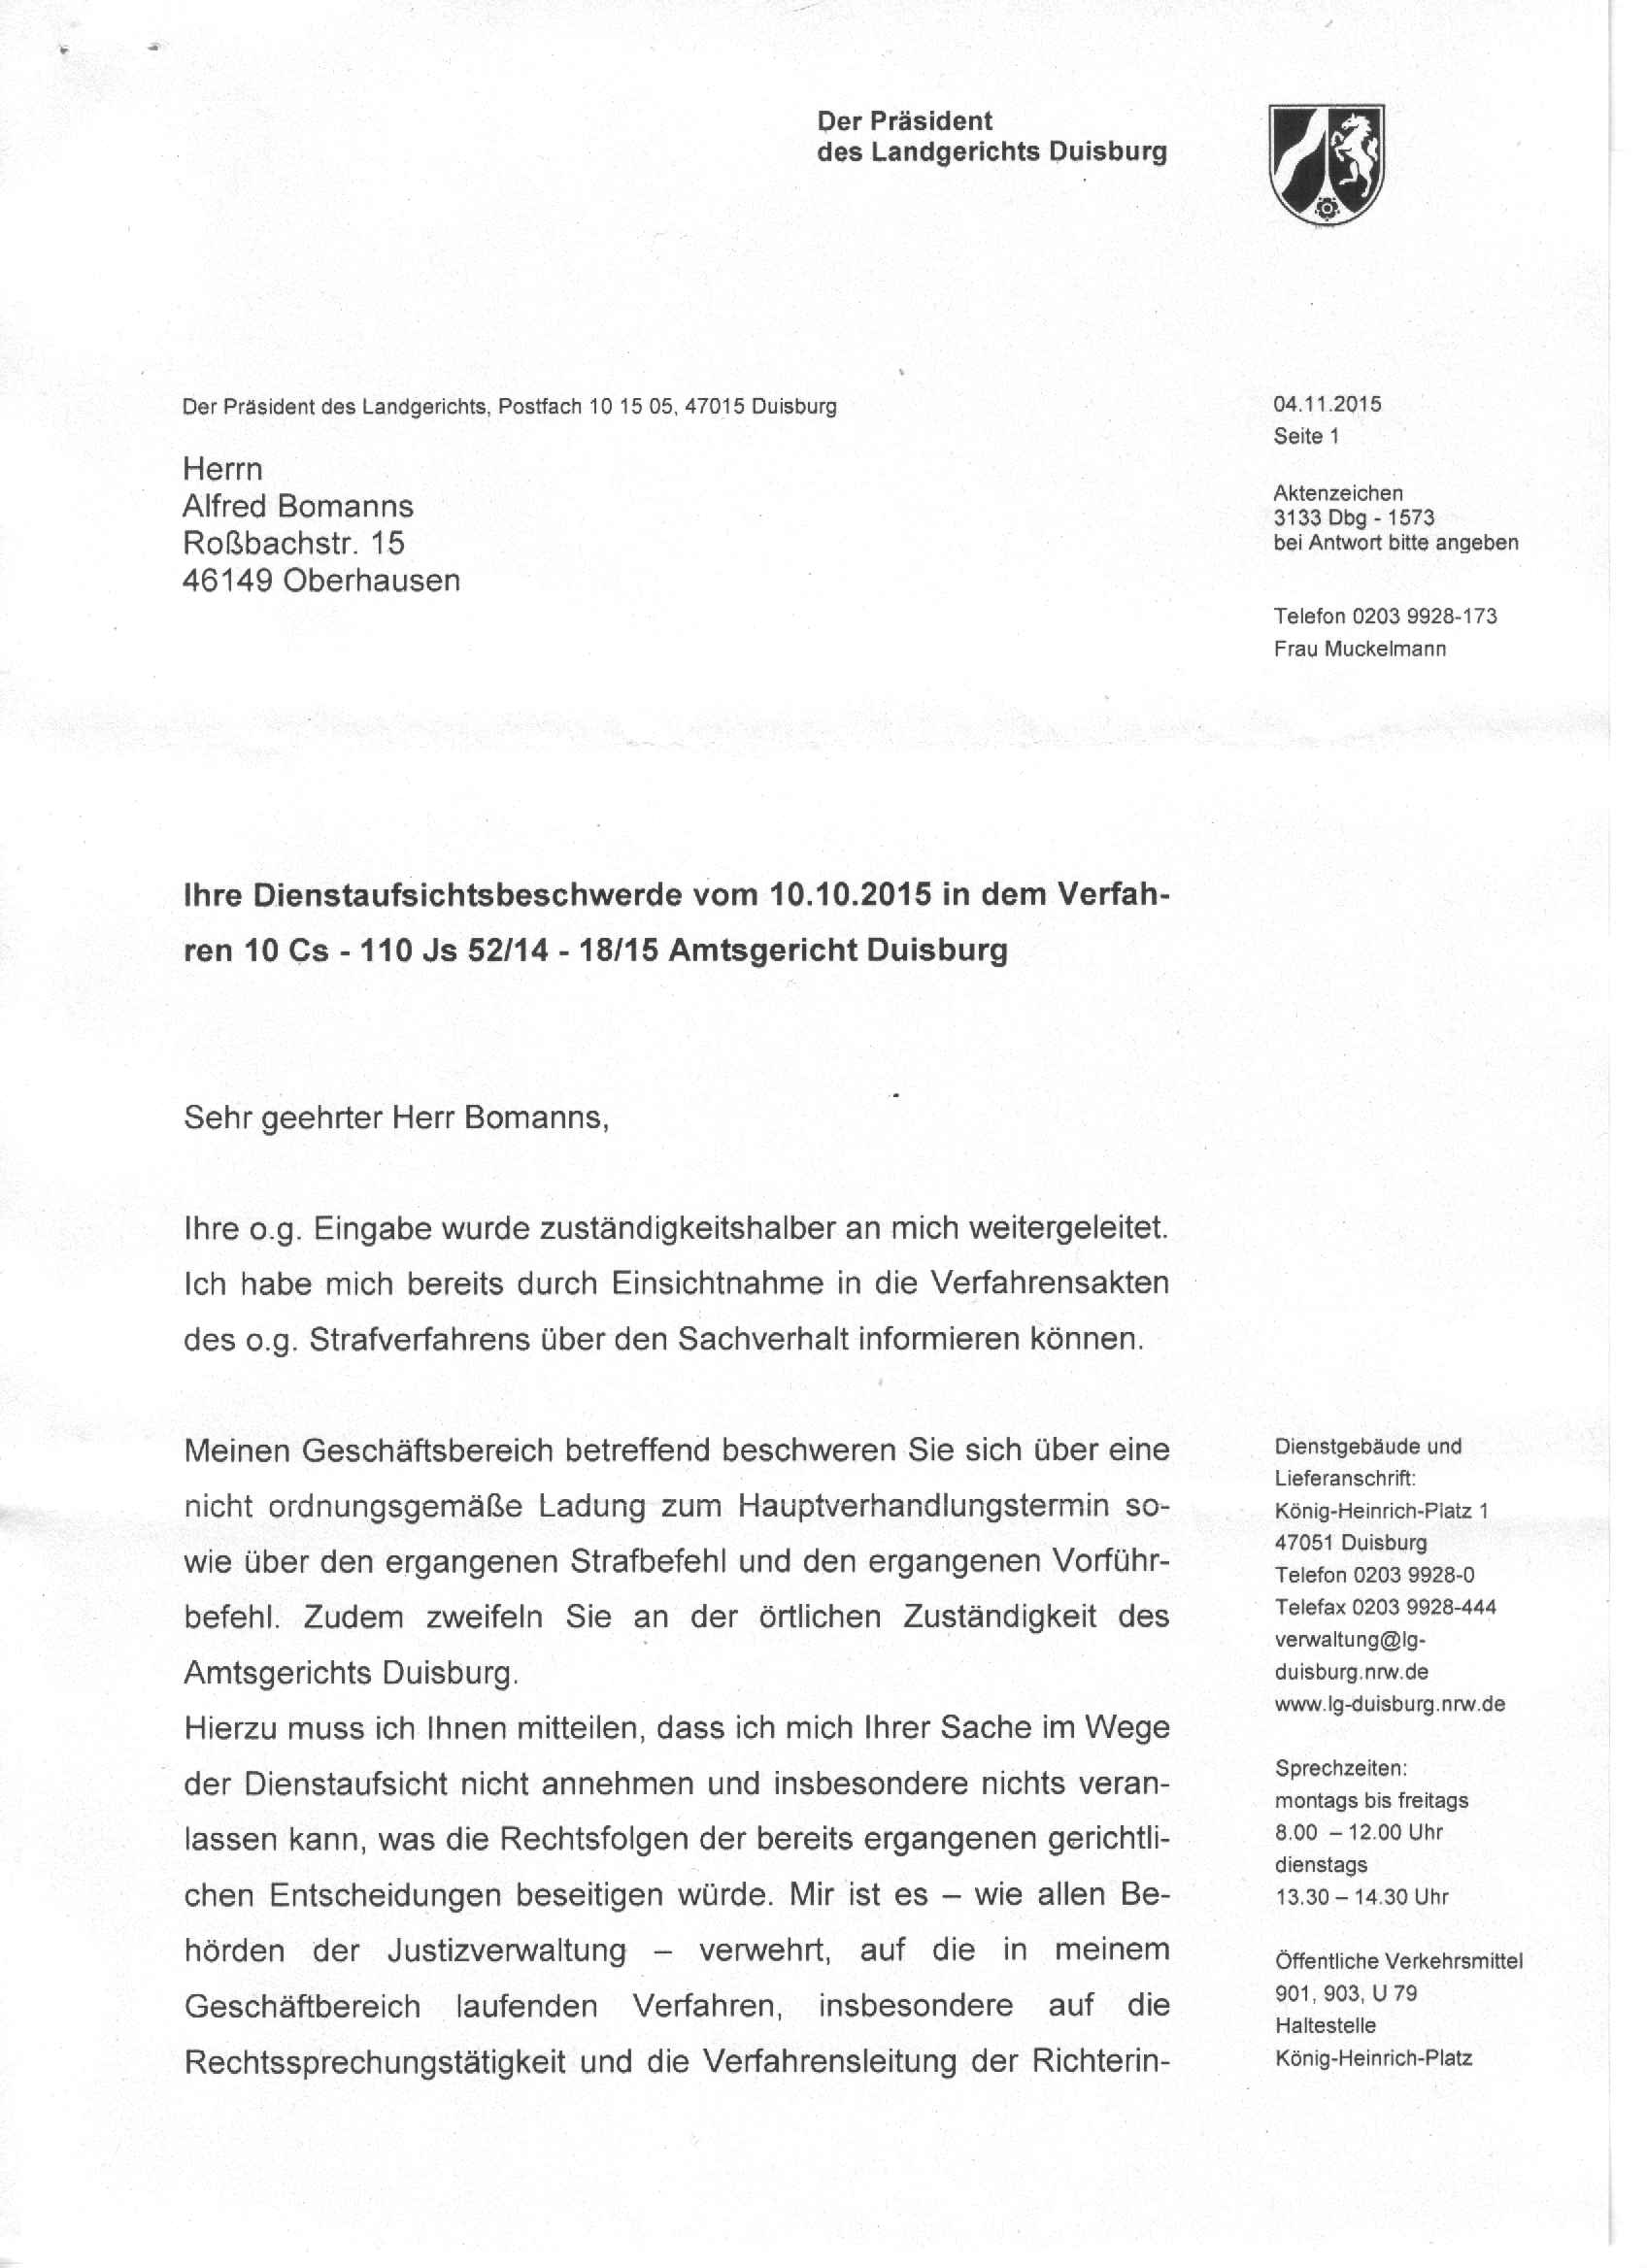 Antwort des Präsidenten des Landgerichts Duisburg, Ulf-Thomas Bender, vom 04.11.2015, S. 1